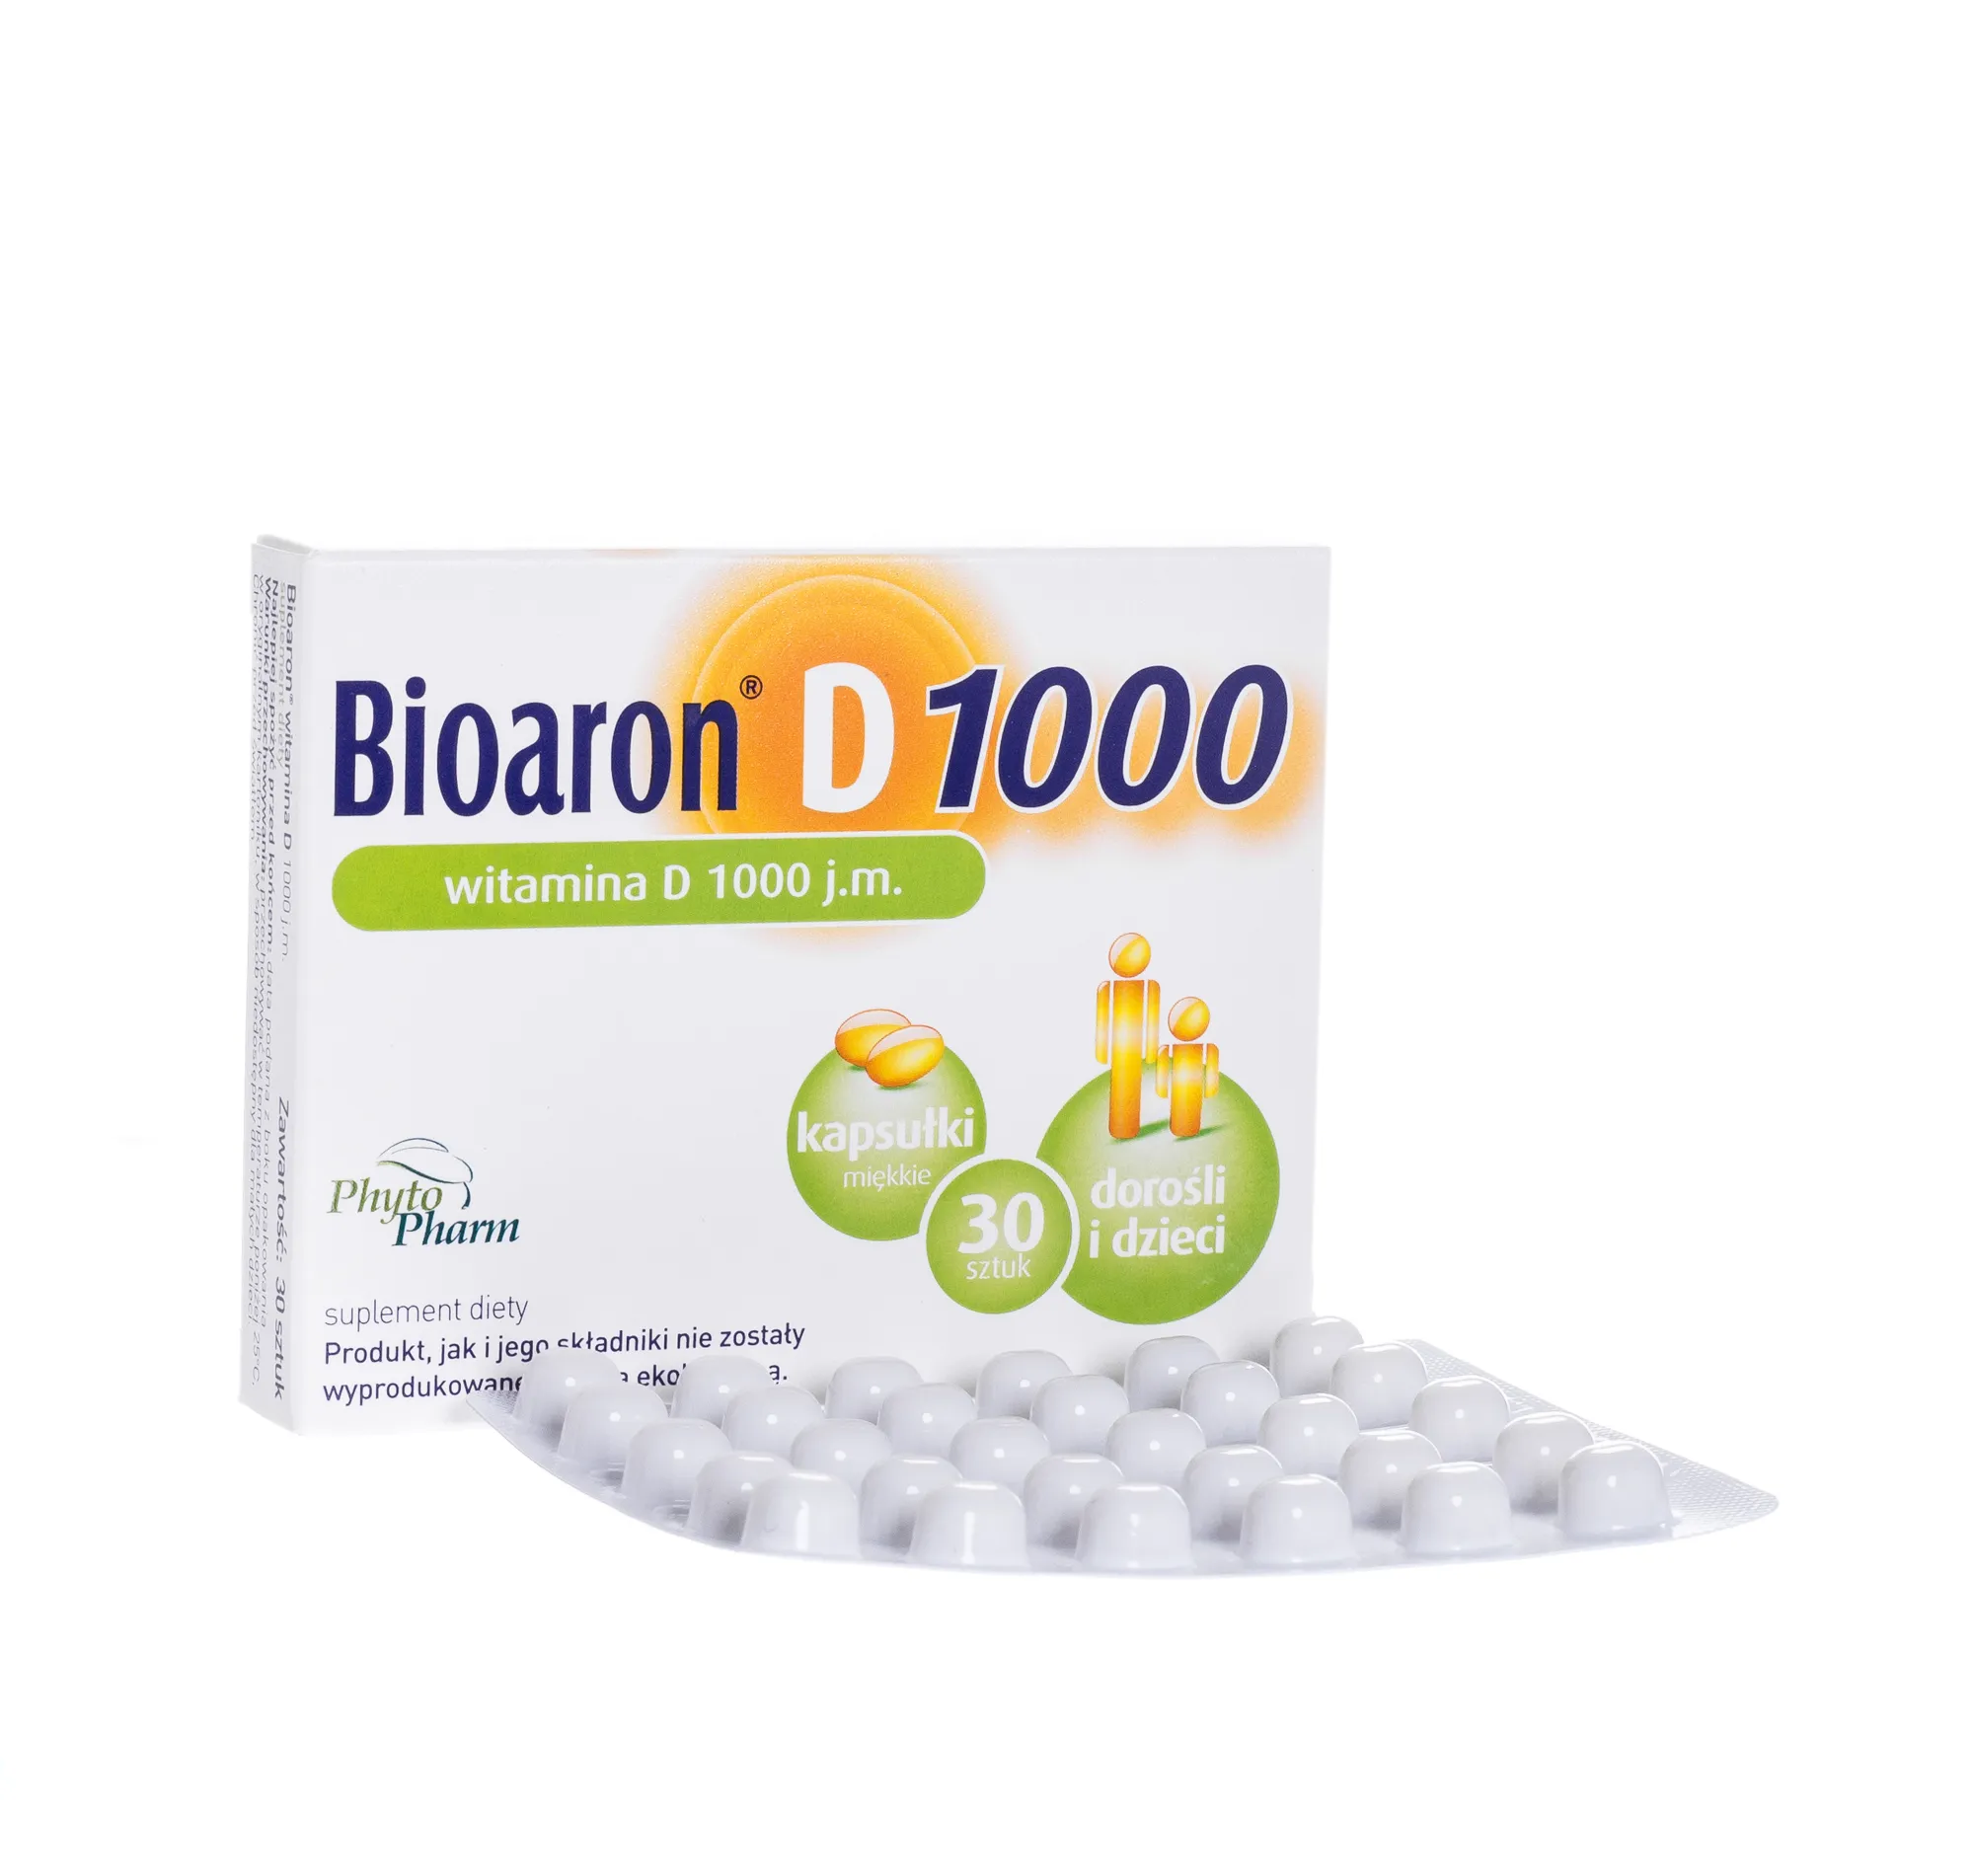 Bioaron witamina D 1000 j.m, suplement diety, 30 kapusłek 